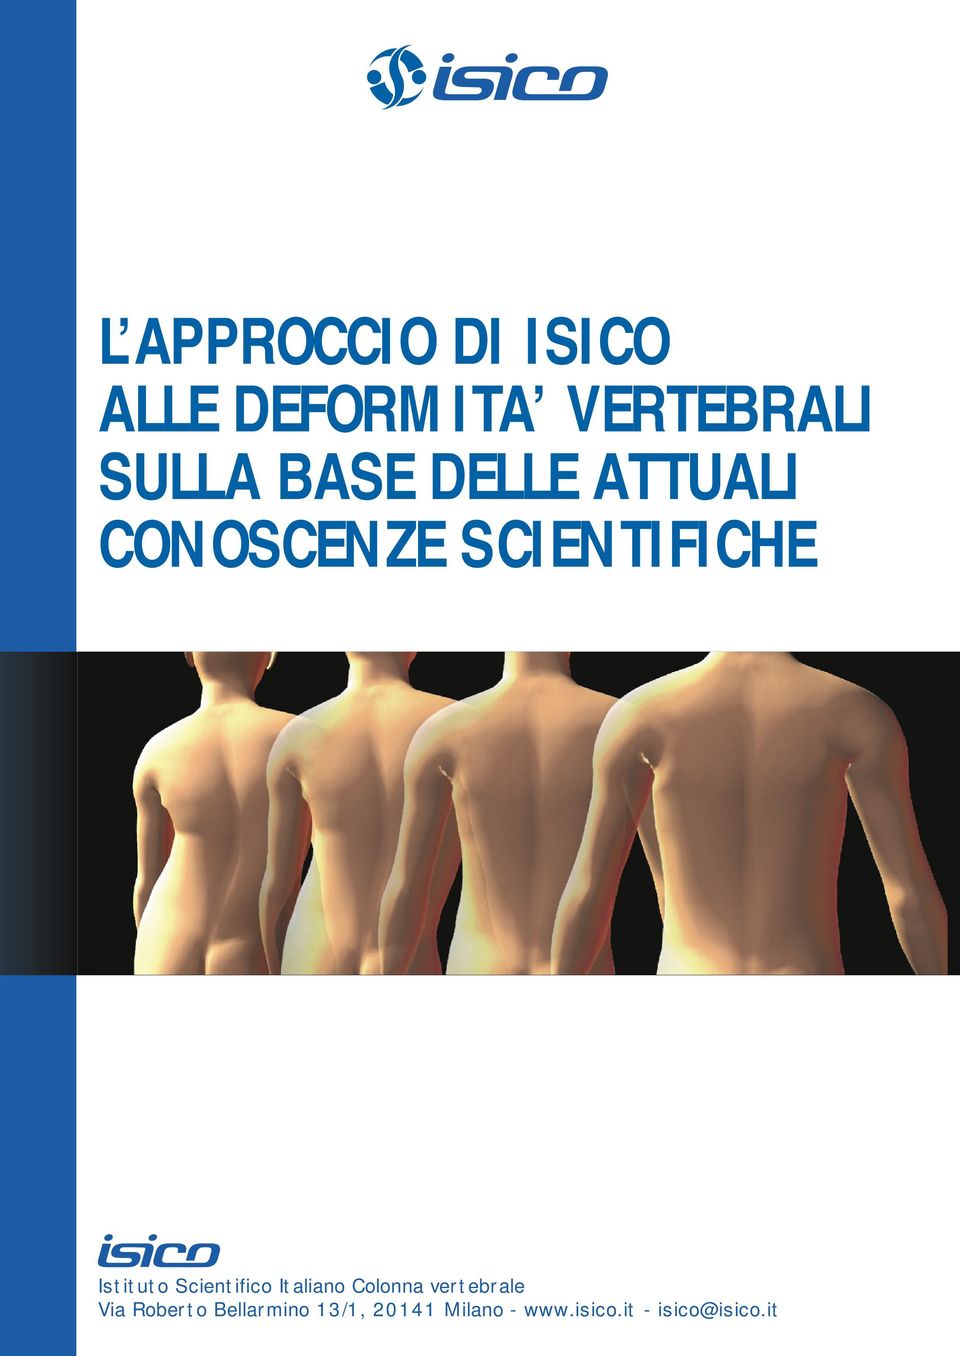 Scientifico Italiano Colonna vertebrale Via Roberto